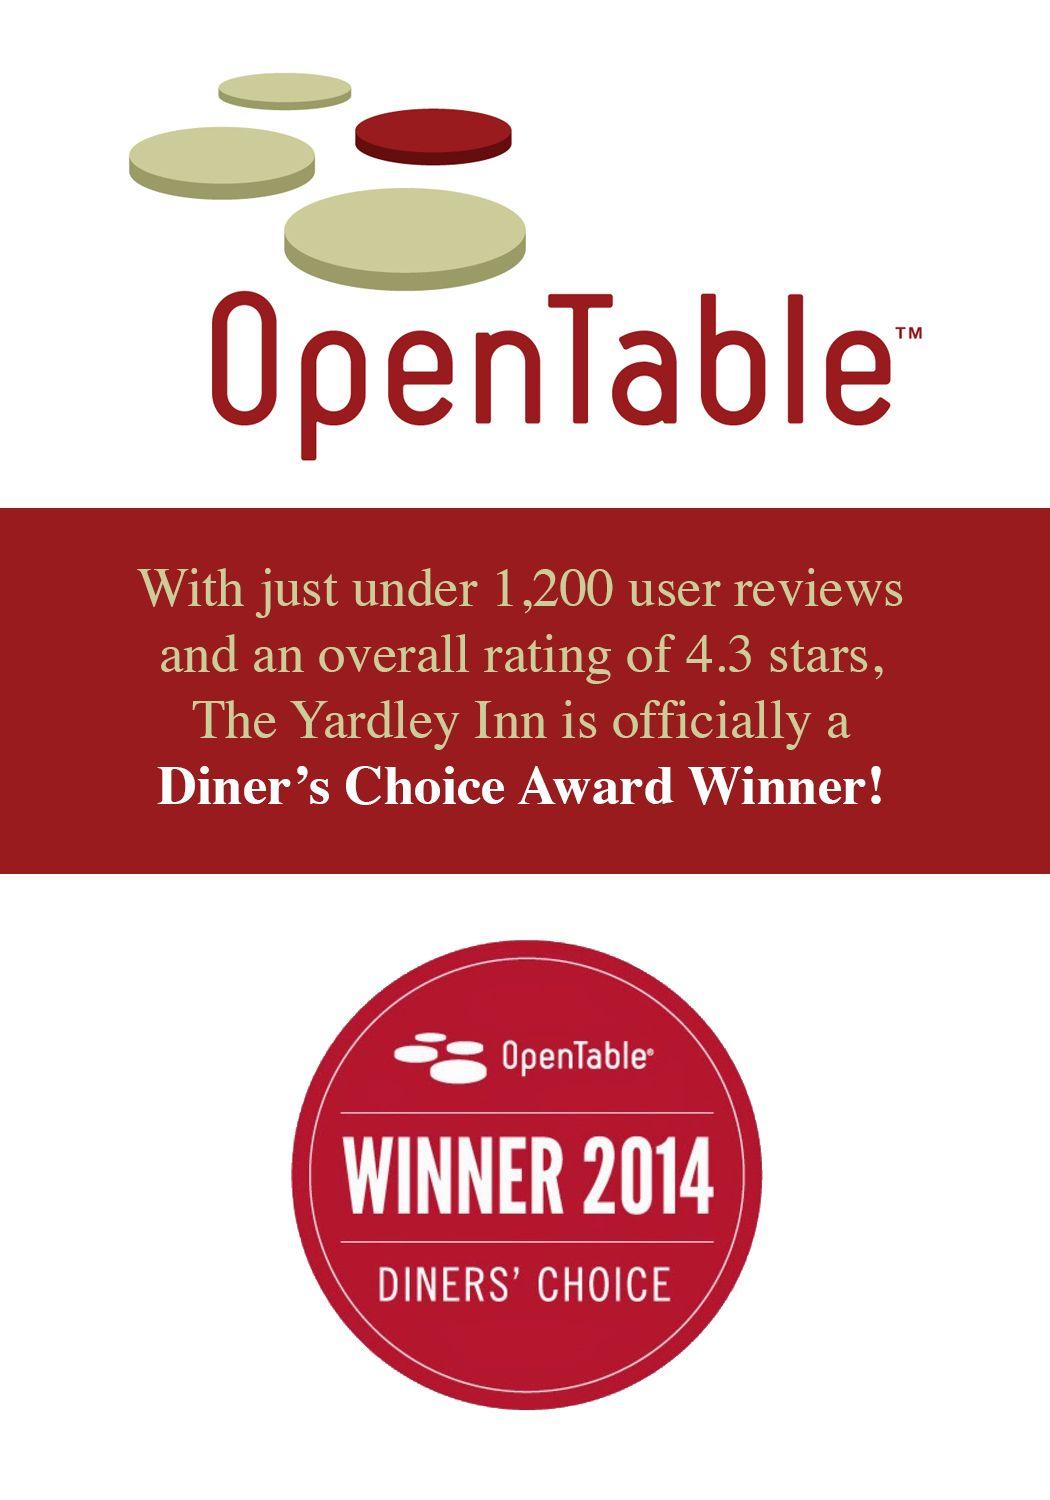 OpenTable Winner Logo - OpenTable Review 2014 | The Yardley Inn